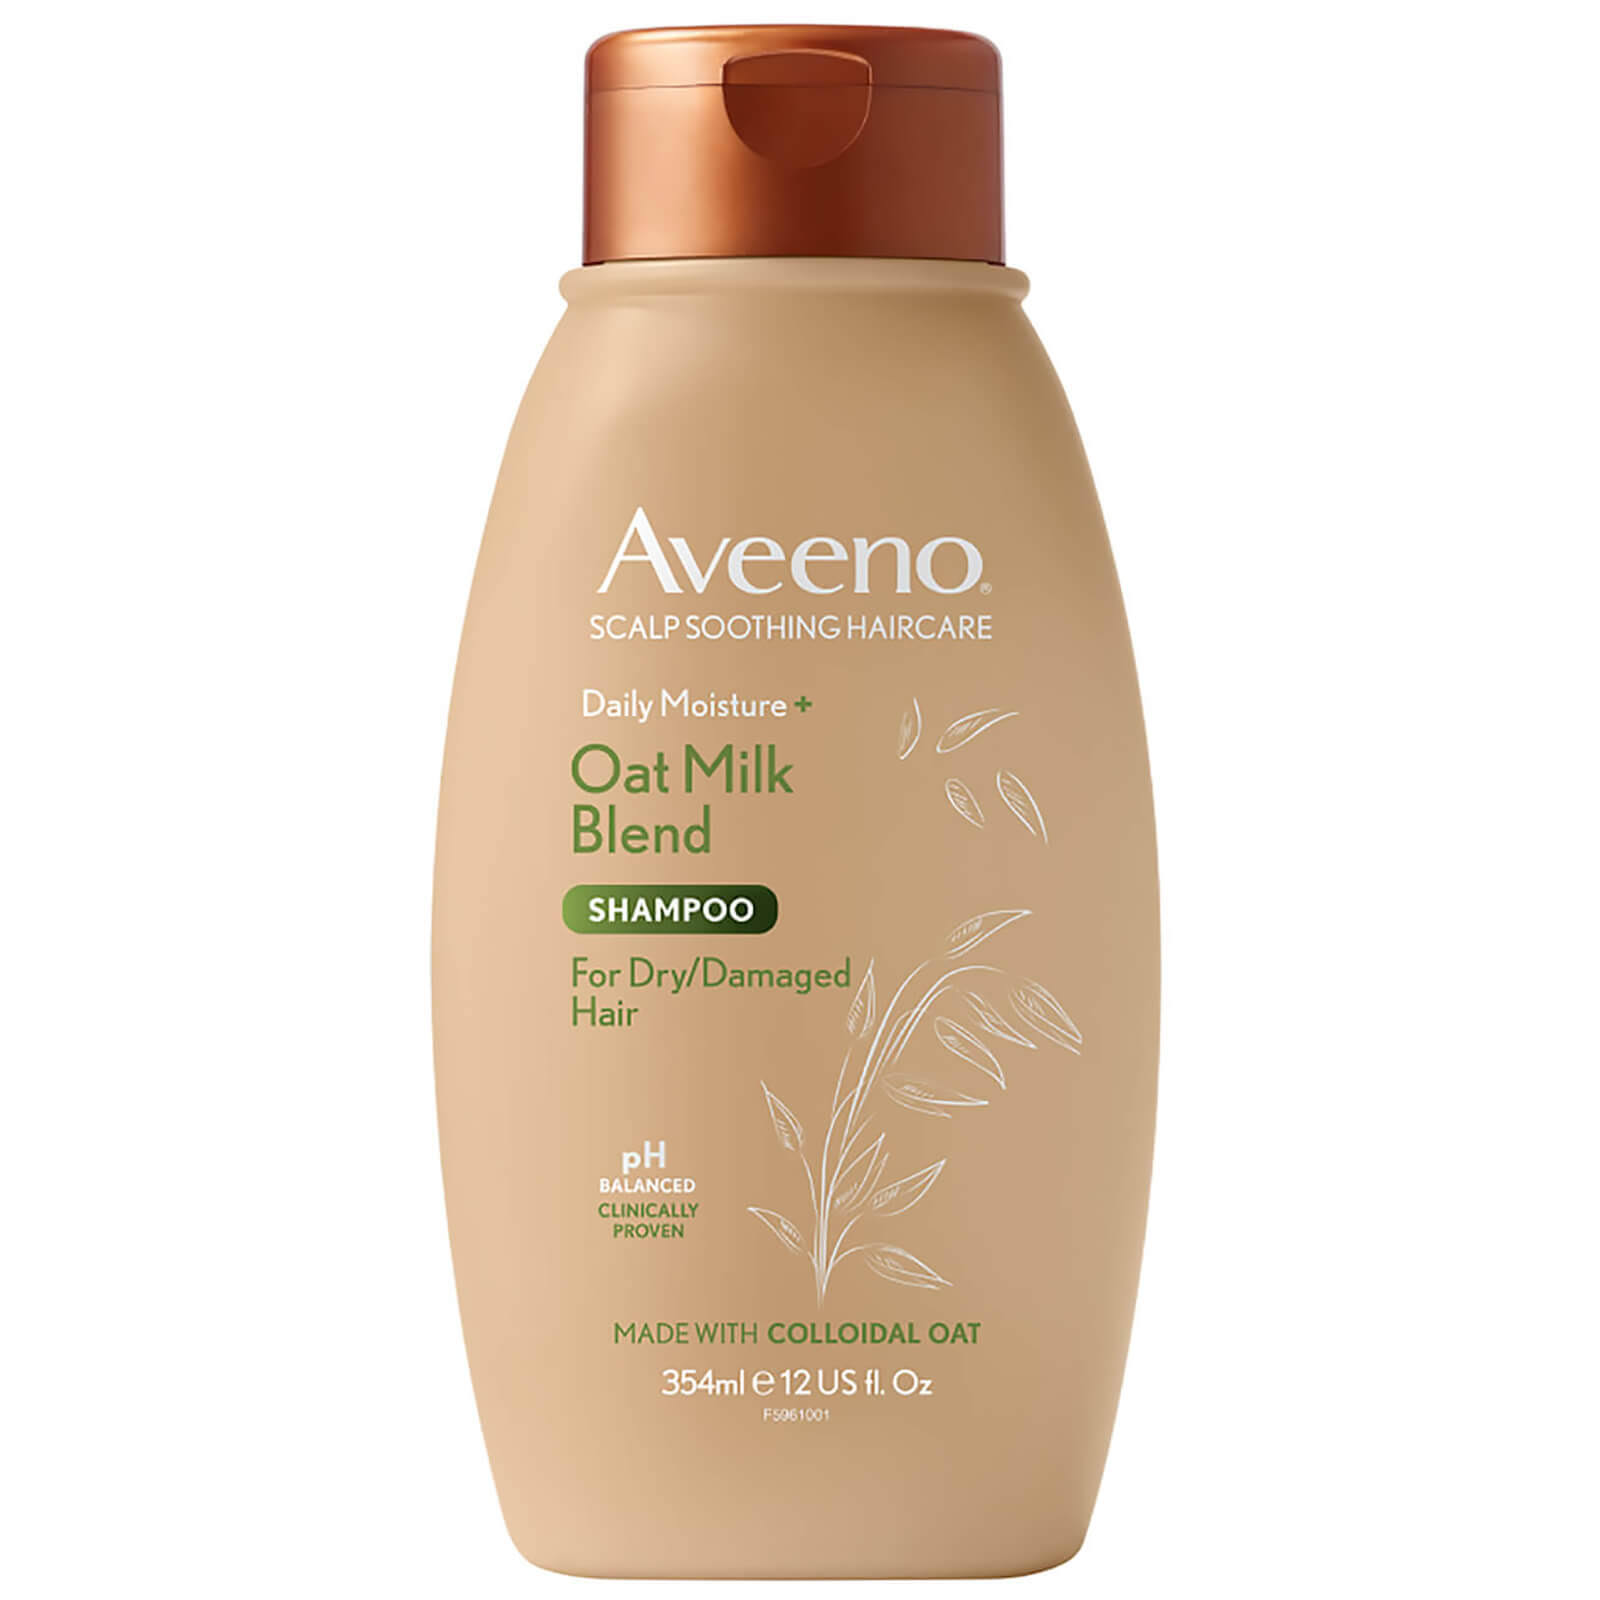 Aveeno Daily Moisture Oat Milk Blend Shampoo 354ml